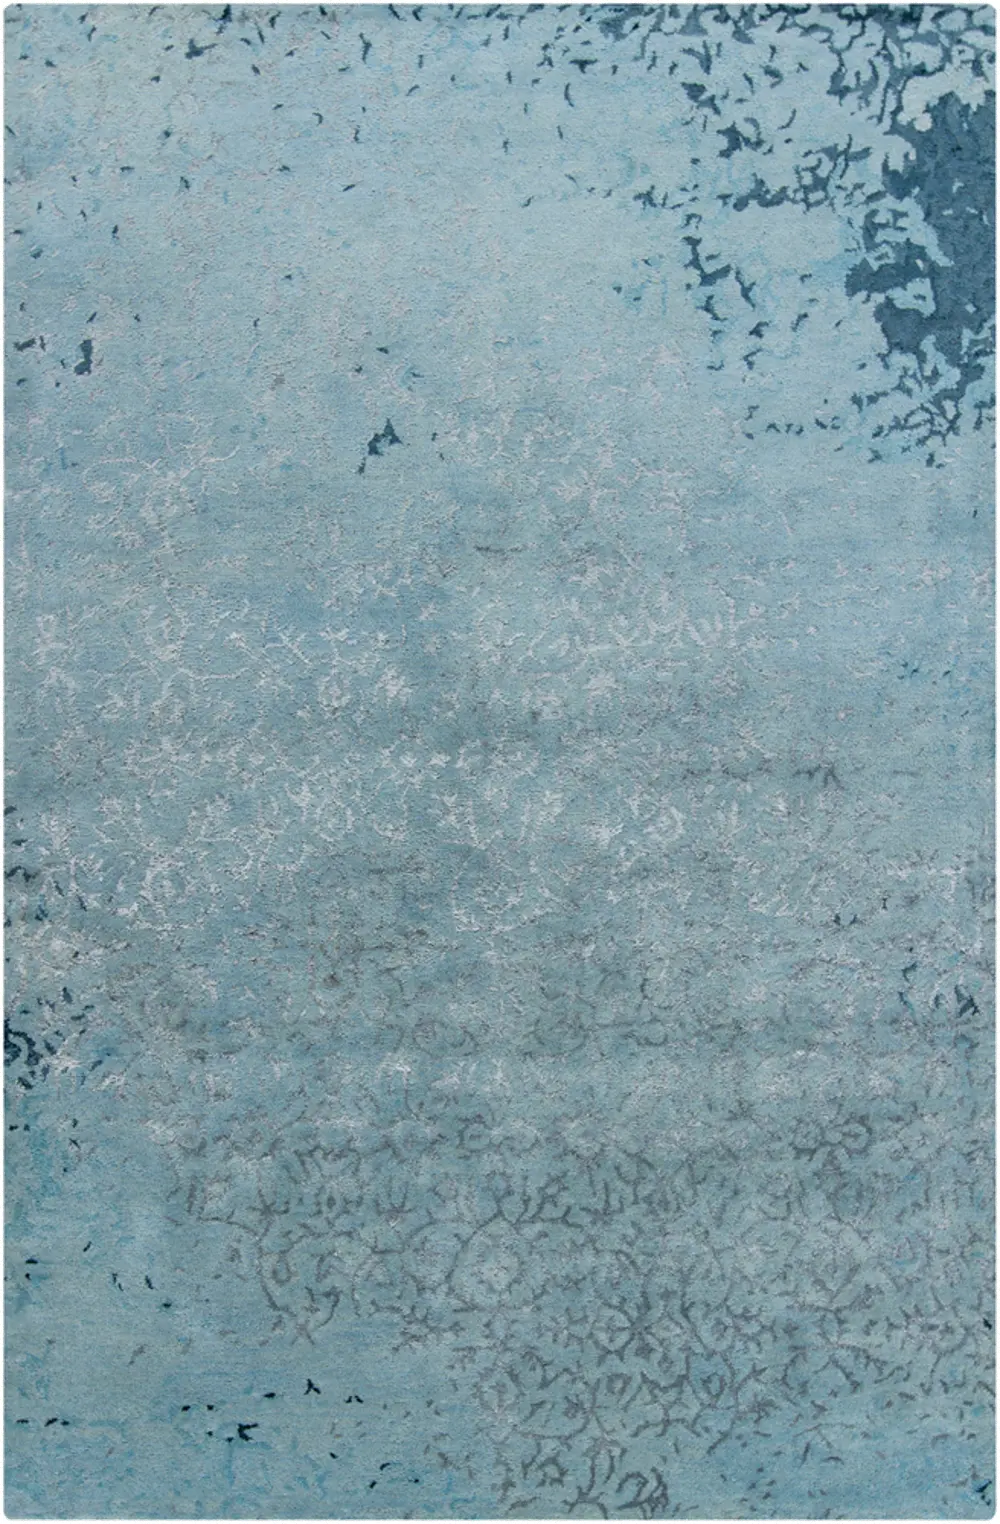 5 x 8 Medium Contemporary Gray and Blue Rug - Rupec-1